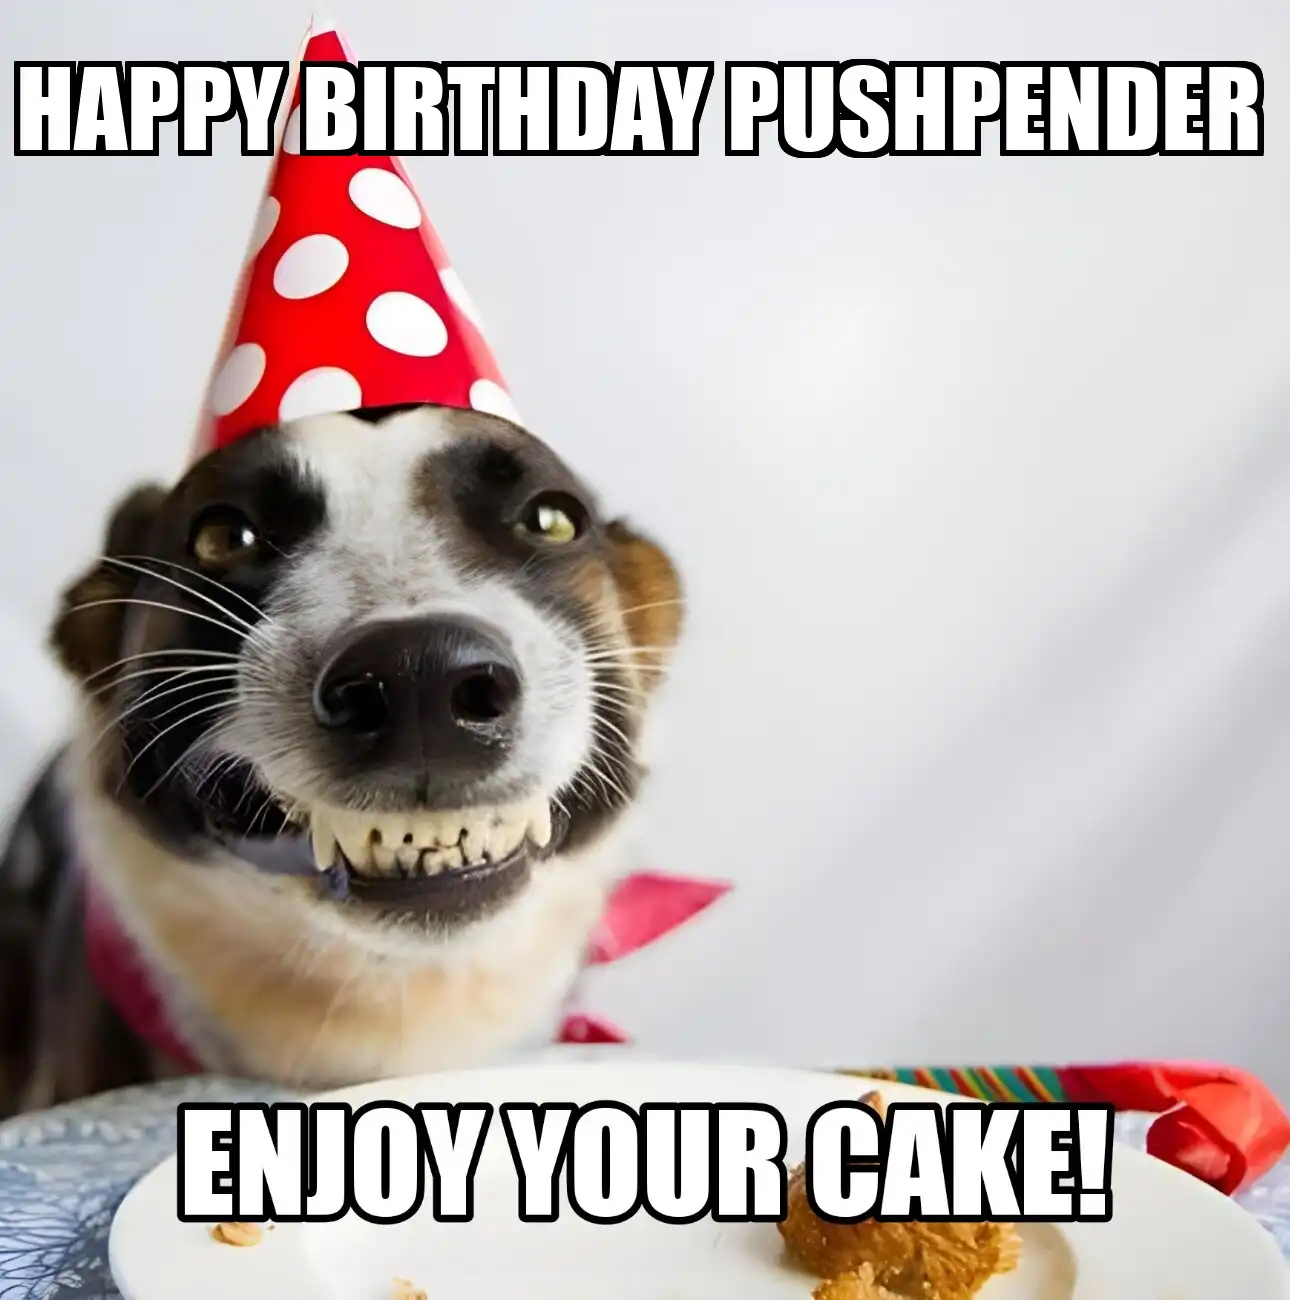 Happy Birthday Pushpender Enjoy Your Cake Dog Meme